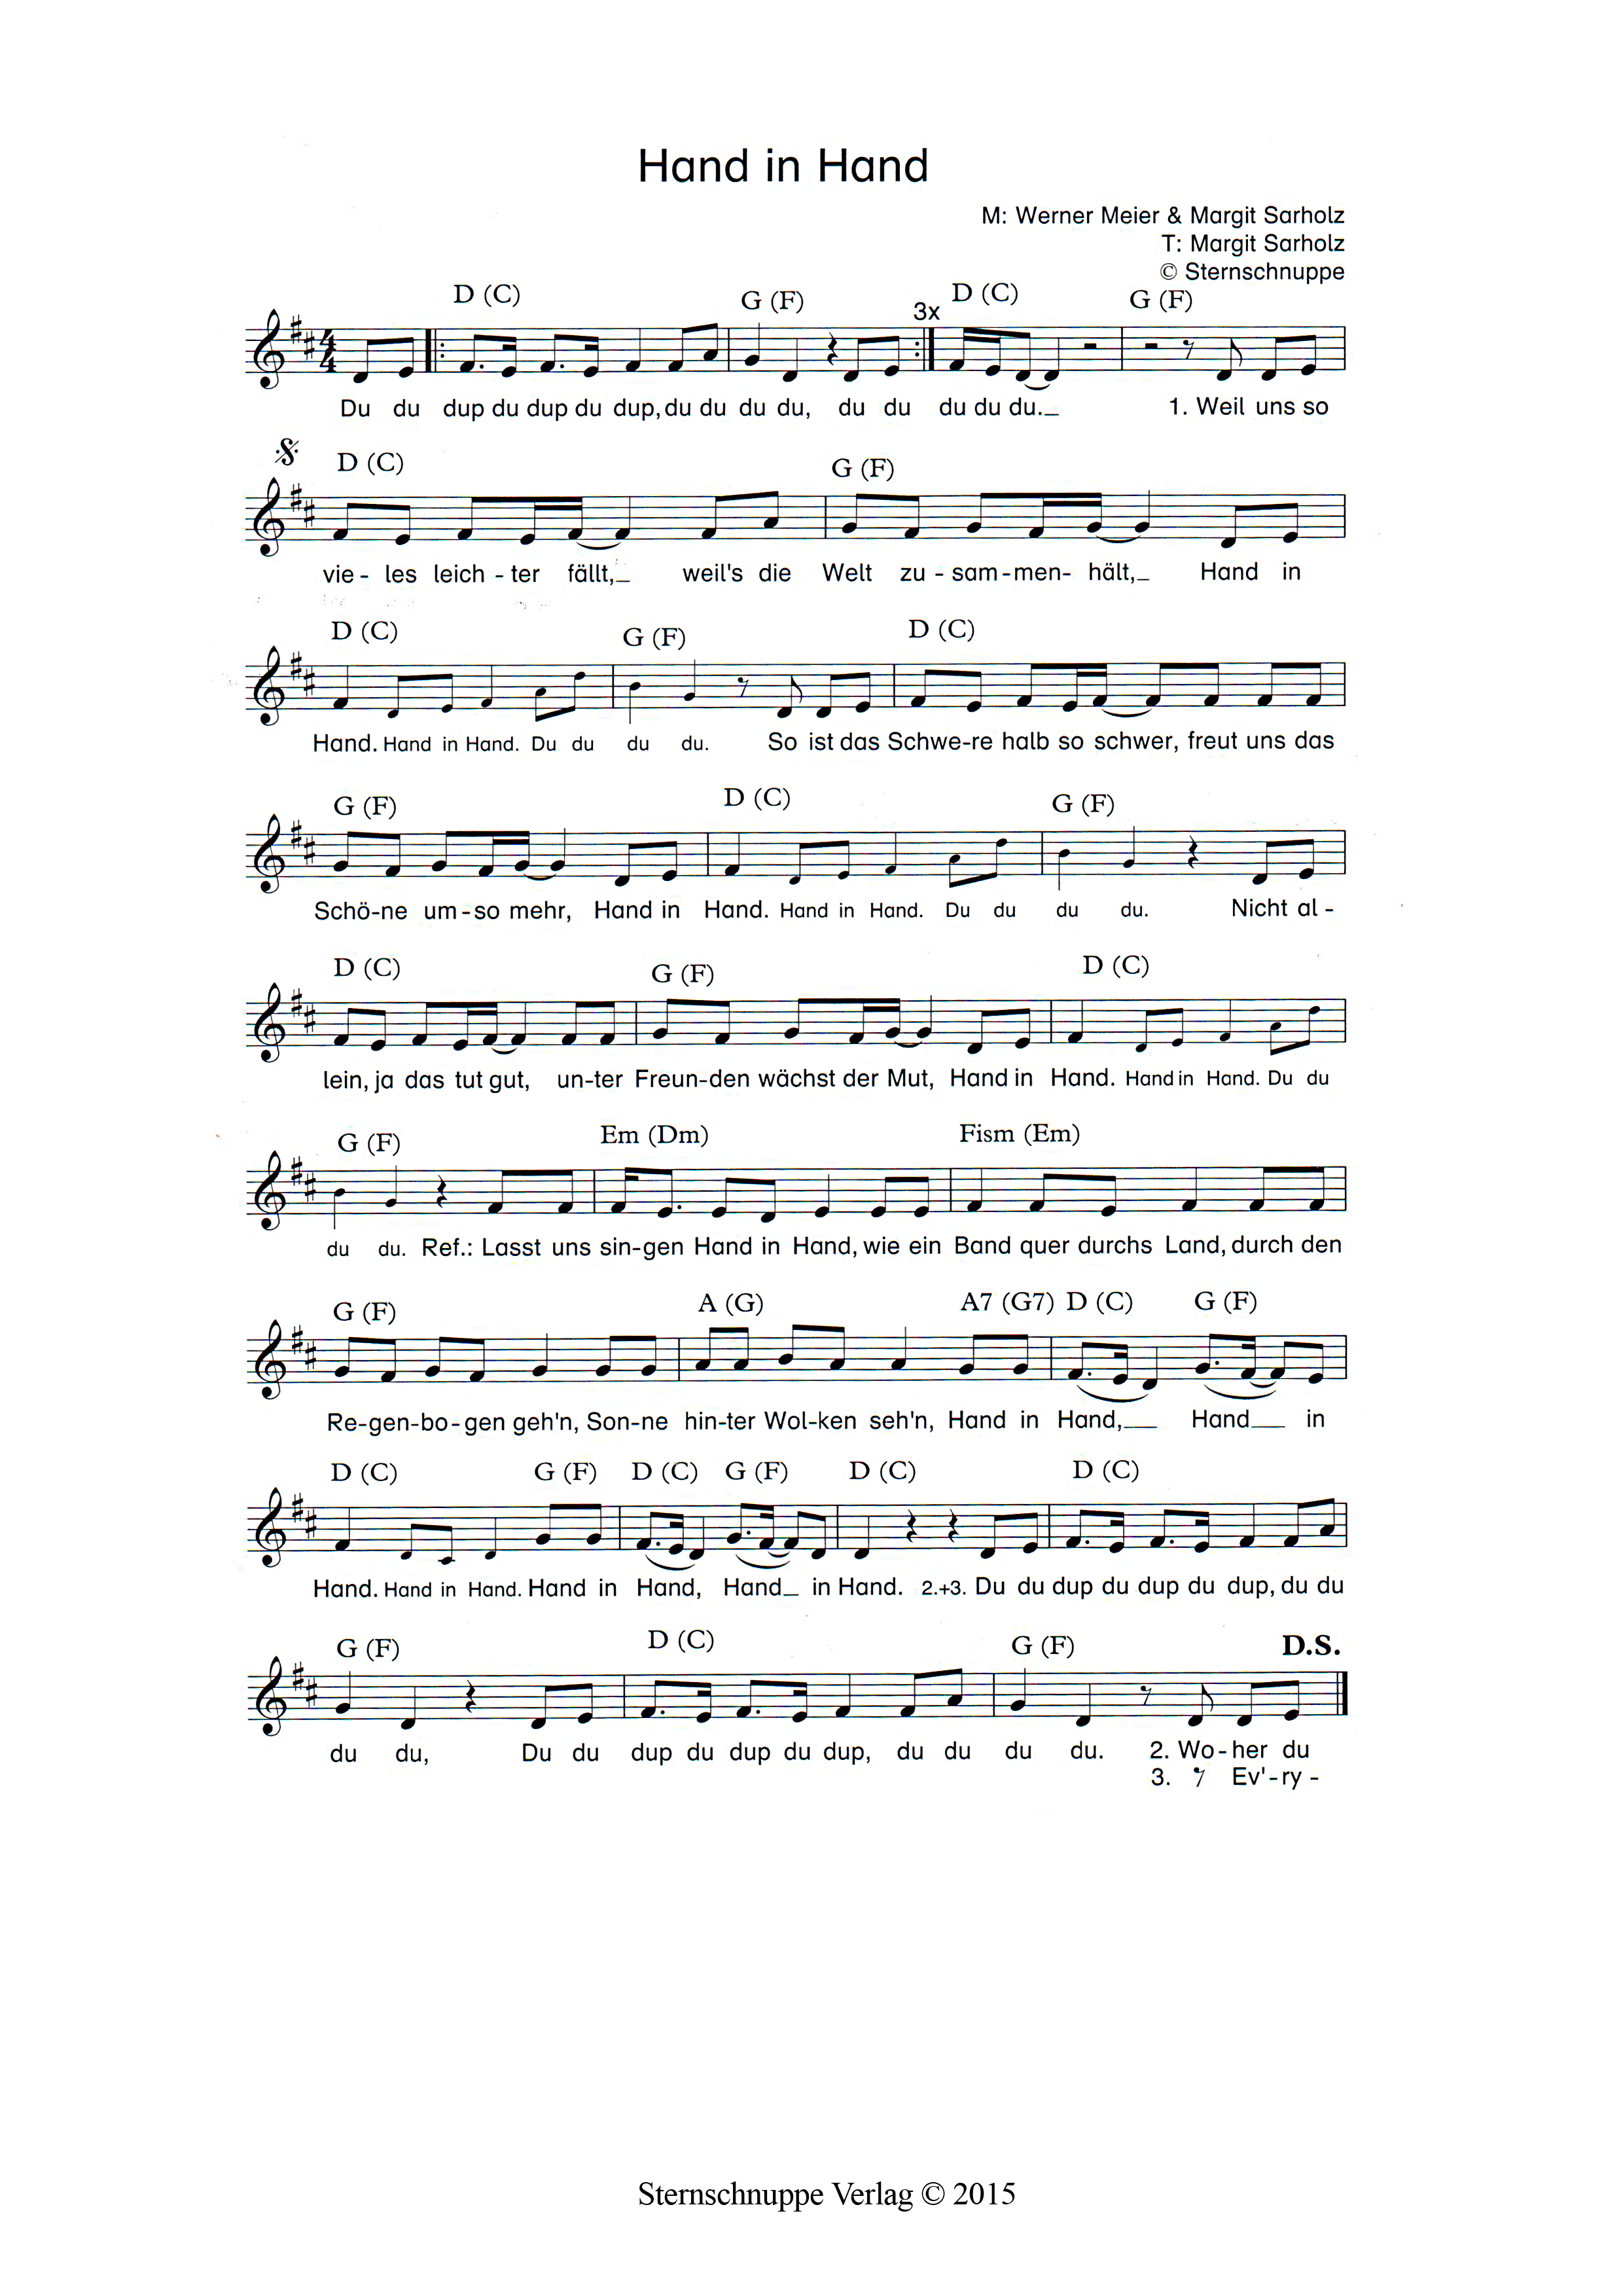 Liedtext, Akkorde und Noten vom Kinderlied Hand in Hand (Schüler-Hymne)